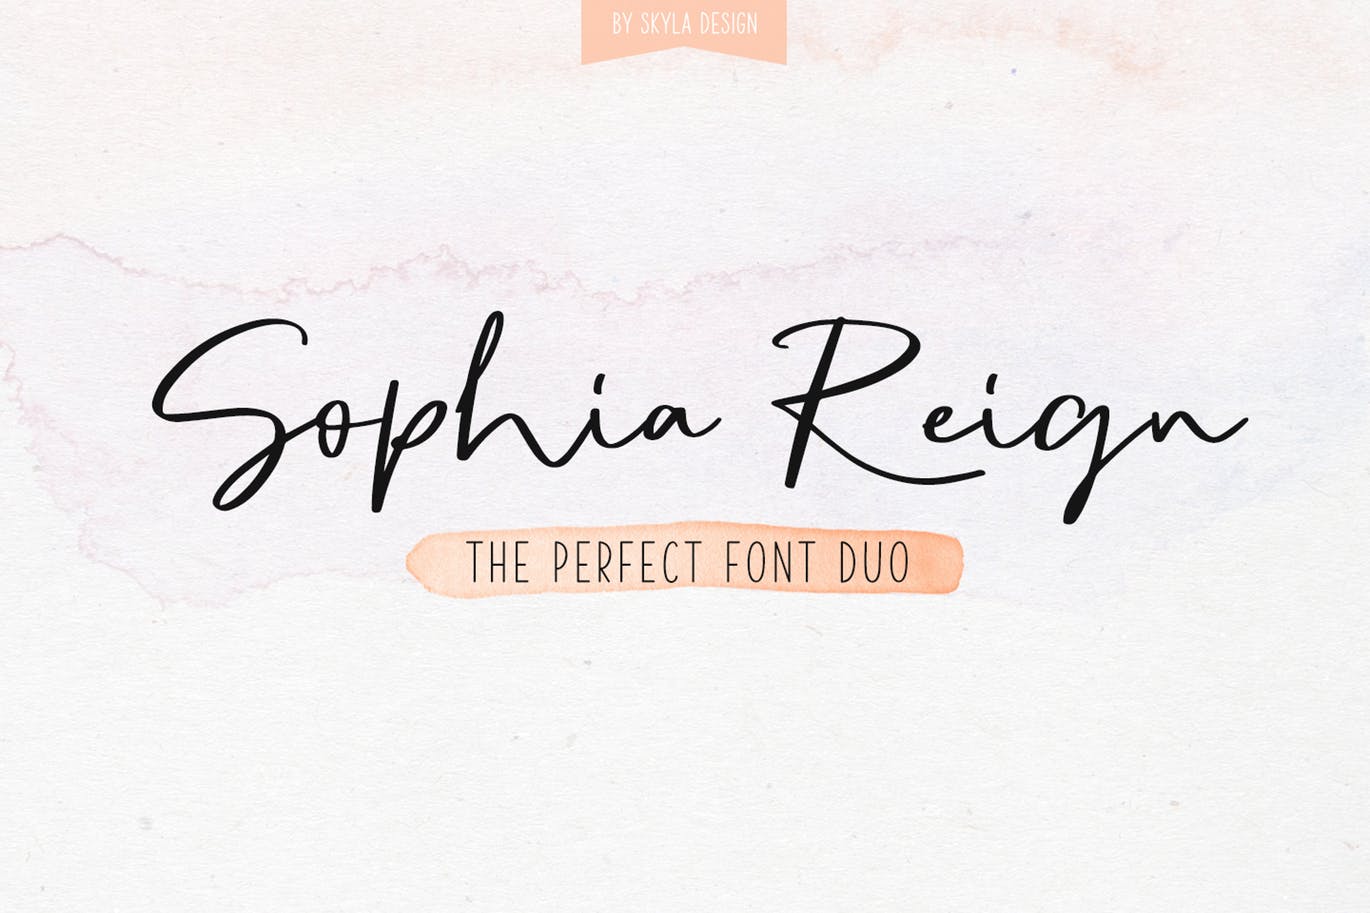 英文钢笔签名字体第一素材精选&大写字母正楷字体第一素材精选二重奏 Sophia Reign signature font duo插图